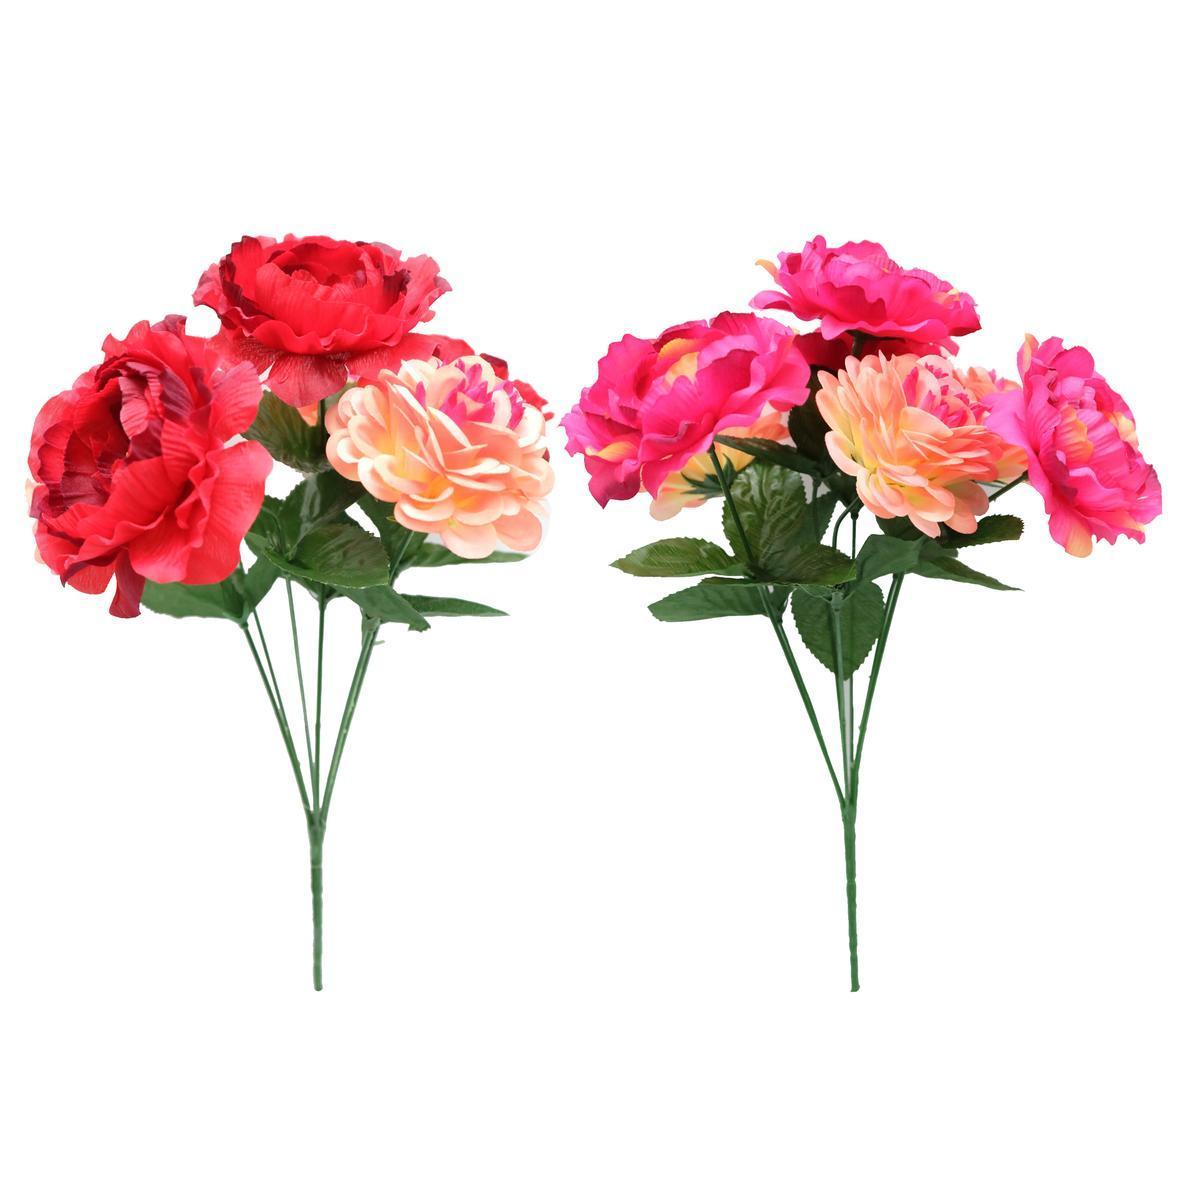 Bouquet de zinnias et renoncules artificiels - H 33 cm - Différents coloris - Rouge, orange, rose, vert